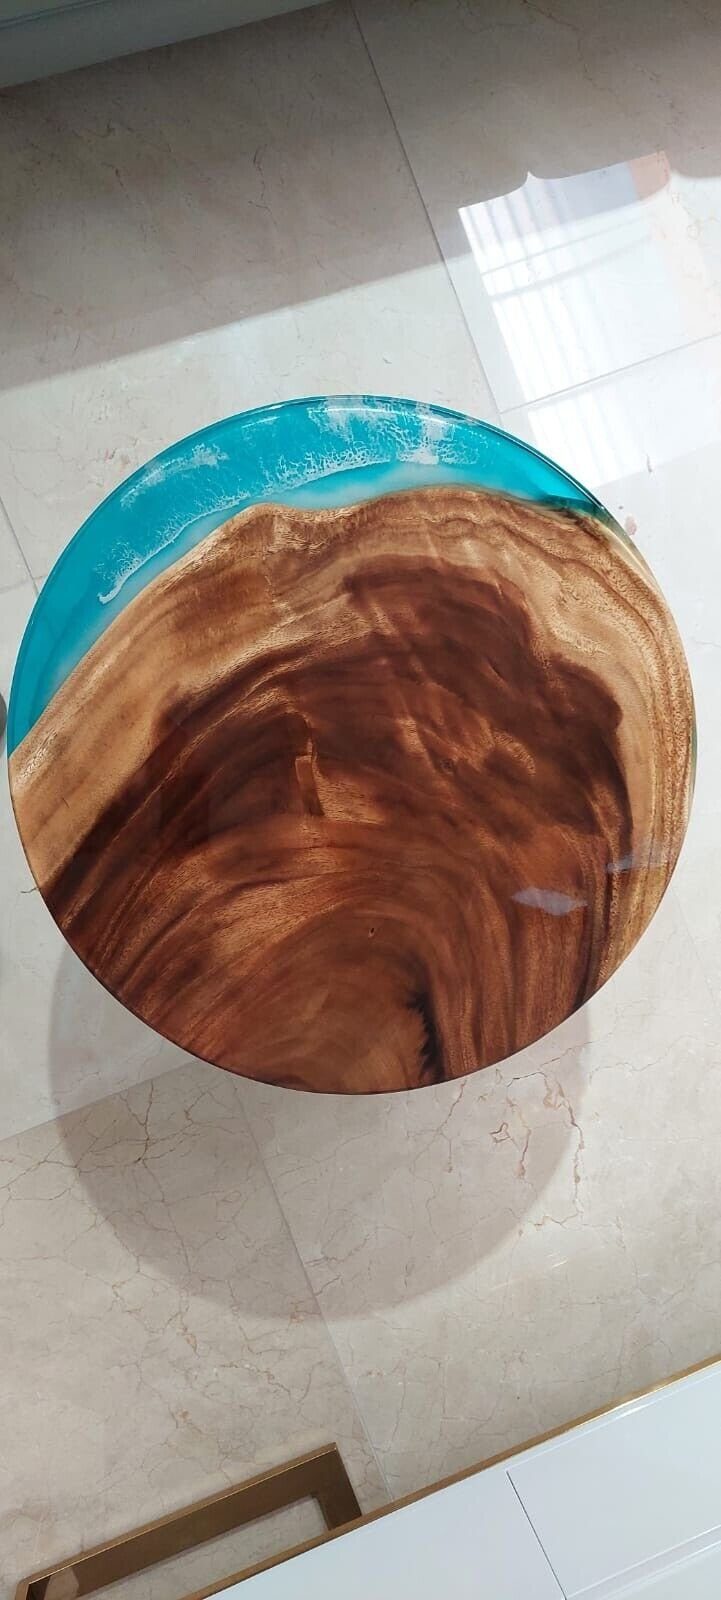 Tische Möbel Holz (Couchtisch), JVmoebel Europe Couchtisch Couchtisch Tisch Harz in Sofort Handarbeit Wohnzimmer Made